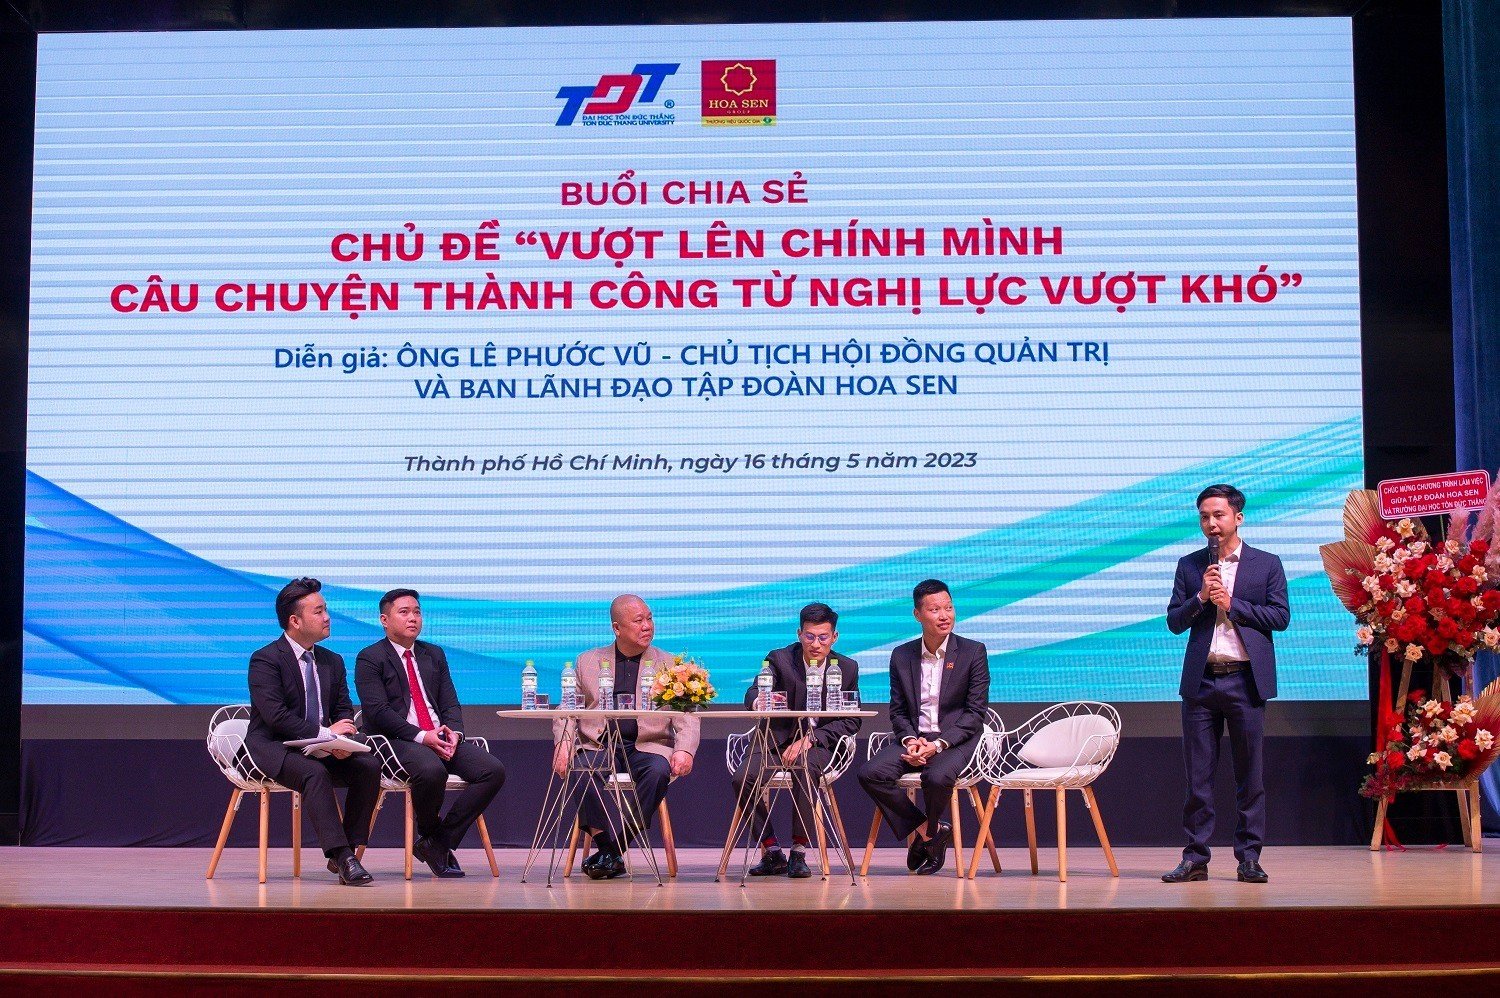 Ông Tăng Văn Dũng (thứ 4 từ trái sang) và ông Nguyễn Văn Quang (thứ nhất từ phải sang) chia sẻ trải nghiệm thực tế dưới góc nhìn của cựu sinh viên TDTU